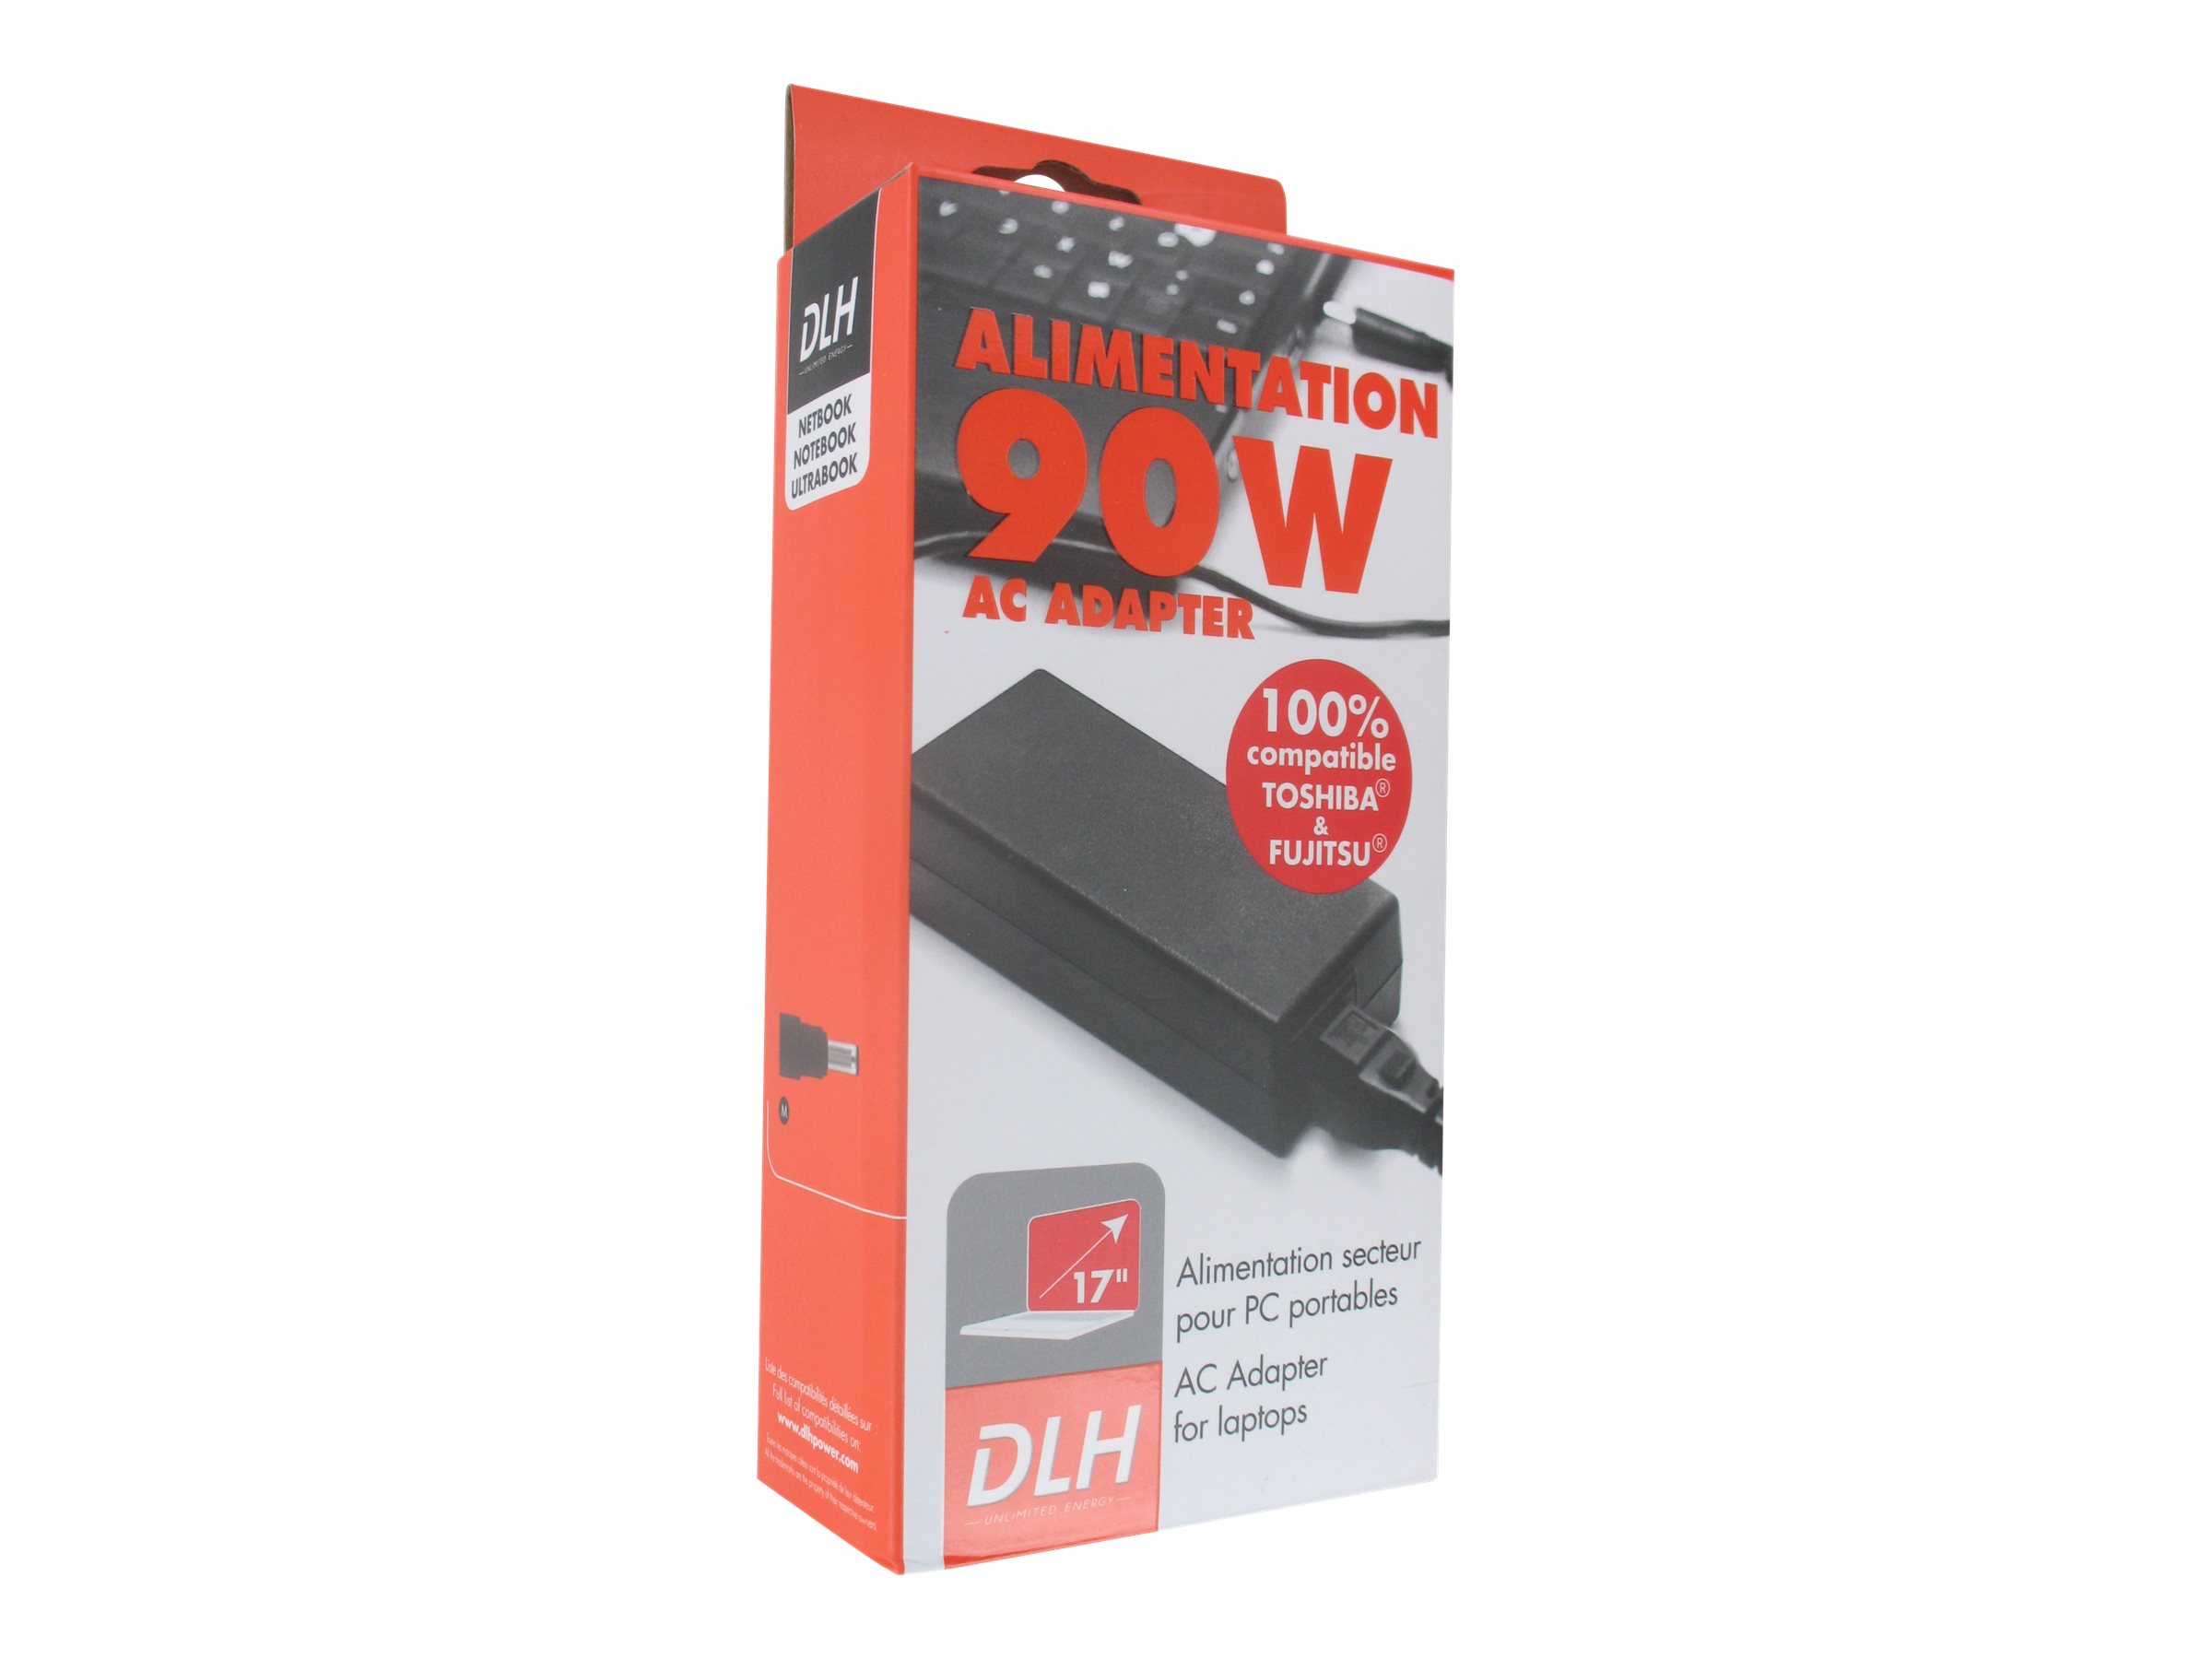 DLH DY-AI1933 - Adaptateur secteur - CA 100/240 V - 90 Watt - DY-AI1933 - Adaptateurs électriques et chargeurs